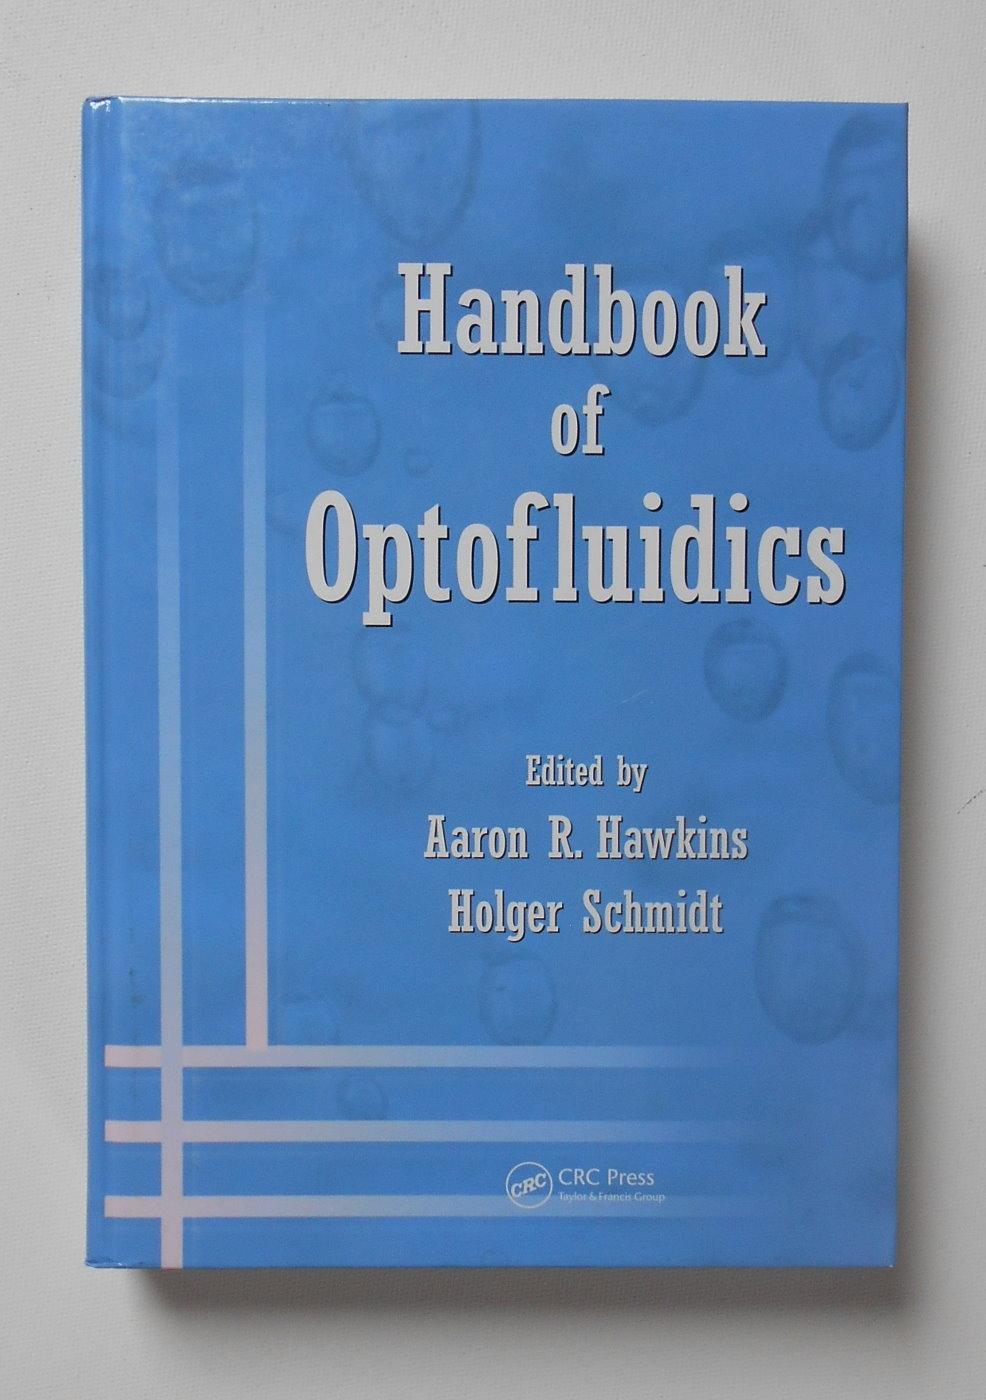 Handbook of Optofluidics - Aaron R. Hawkins; Holger Schmidt